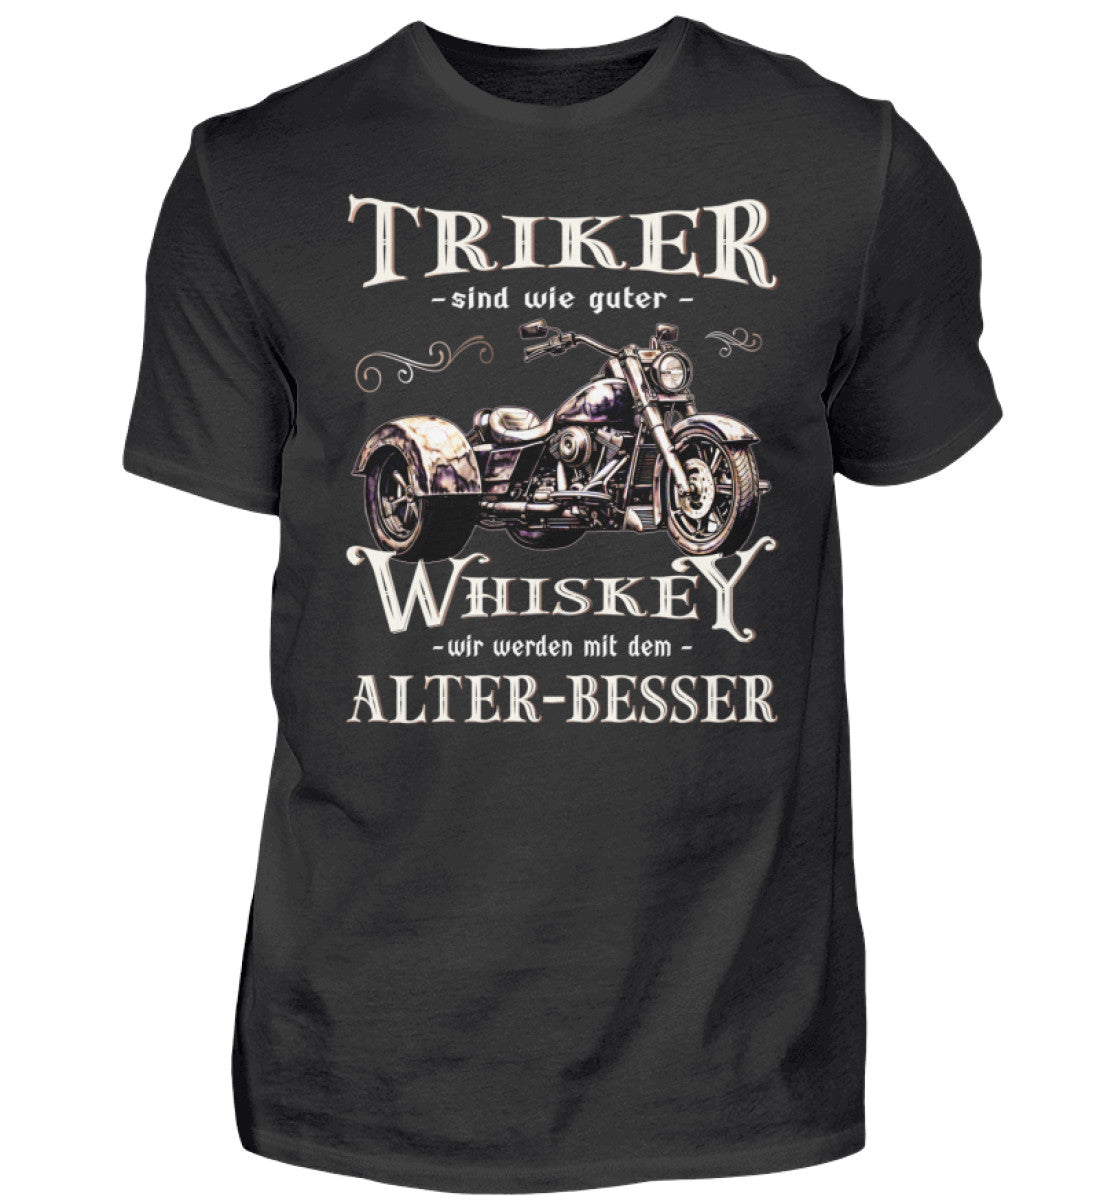 Ein T-Shirt für Trike Fahrer von Wingbikers mit dem Aufdruck, Triker sind wie guter Whiskey - Wir werden mit dem Alter besser, in schwarz.